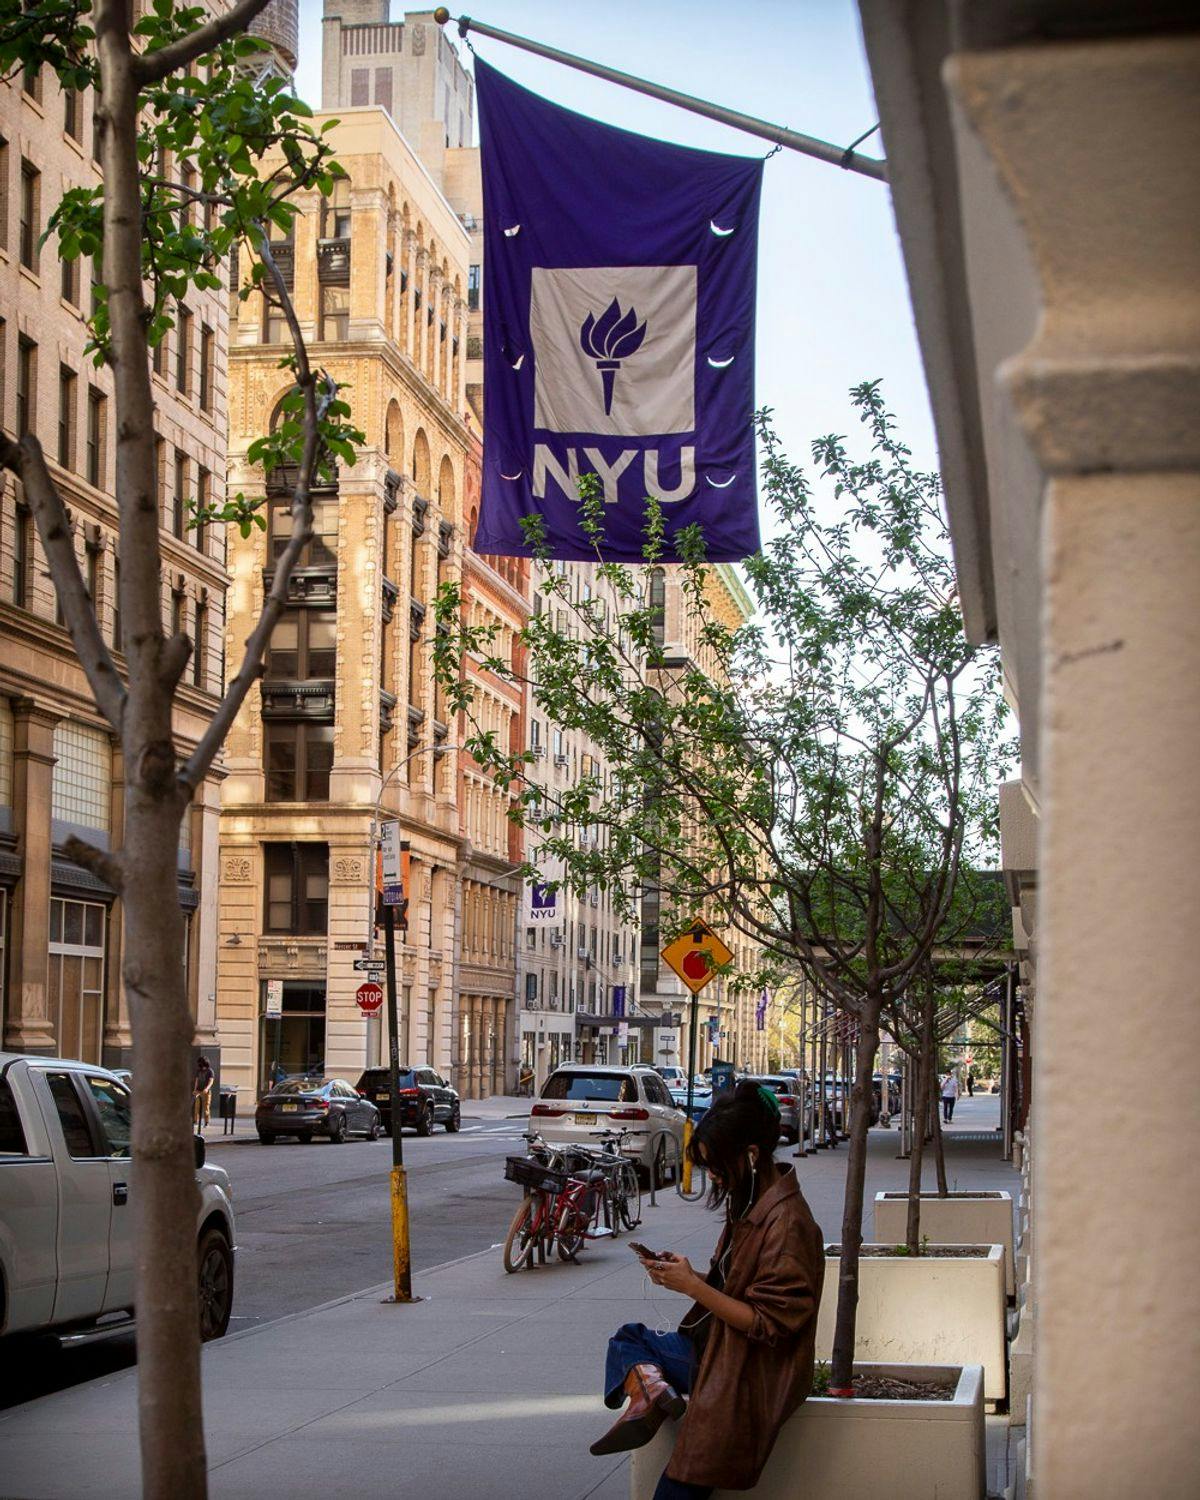 Campus Image of New York University (NYU)